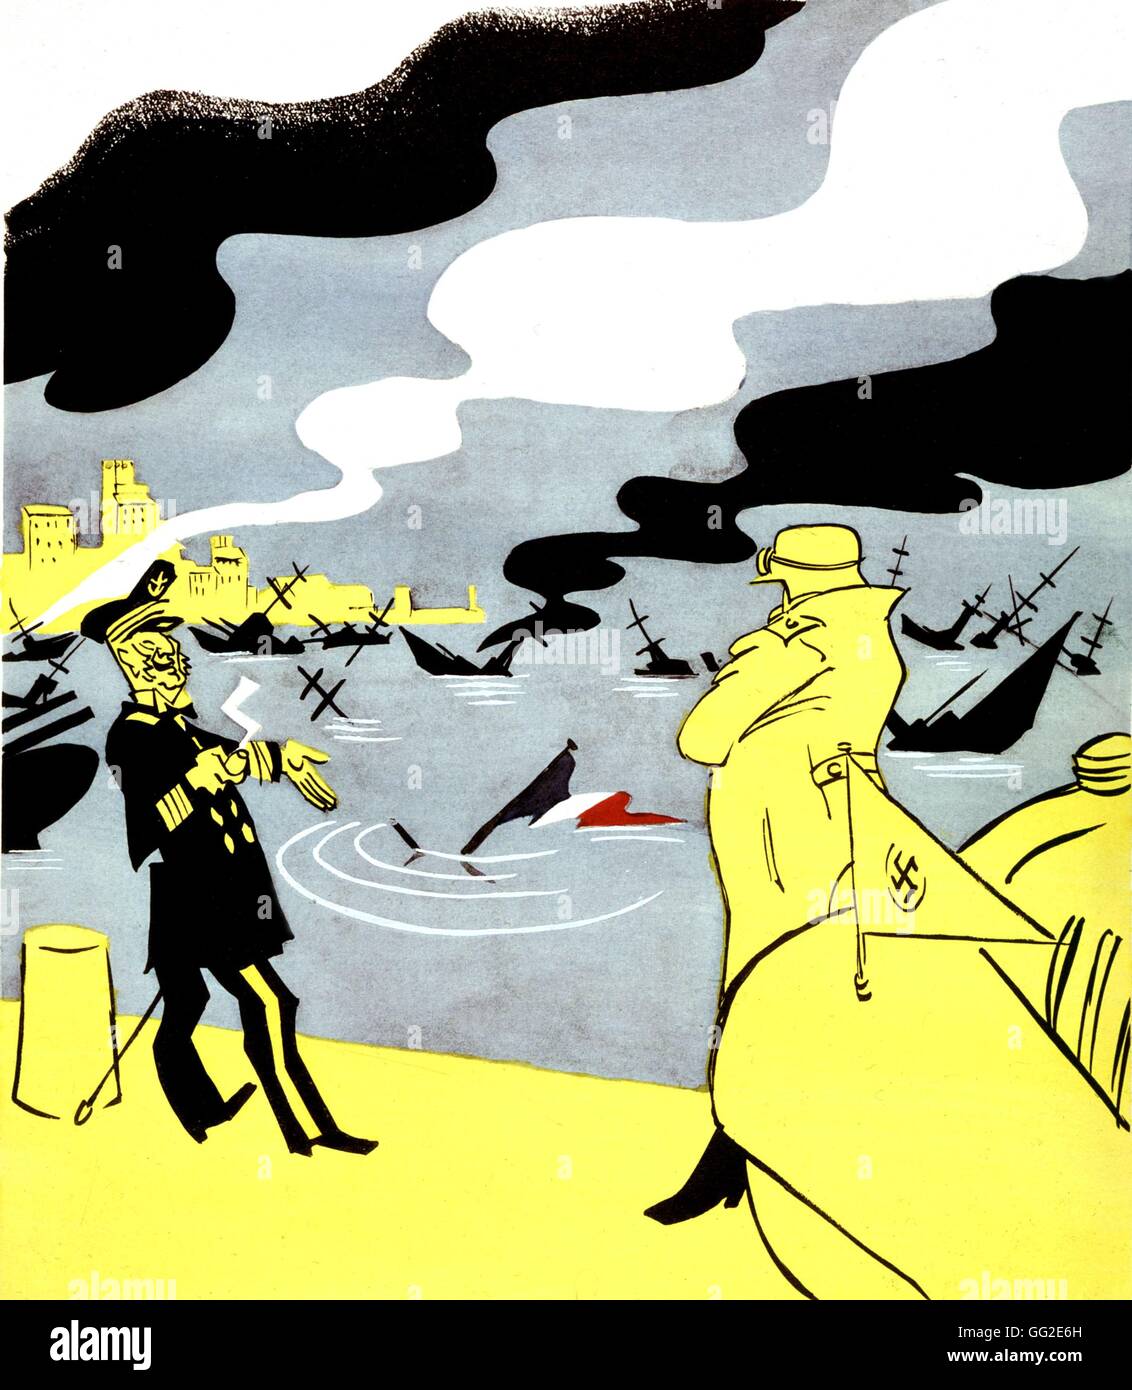 Chœur. La flotte française en descendant du 'Le livre noir', Toulon, Novembre 27, 1942 La France, la Seconde Guerre mondiale Guerre mondiale collection privée Banque D'Images